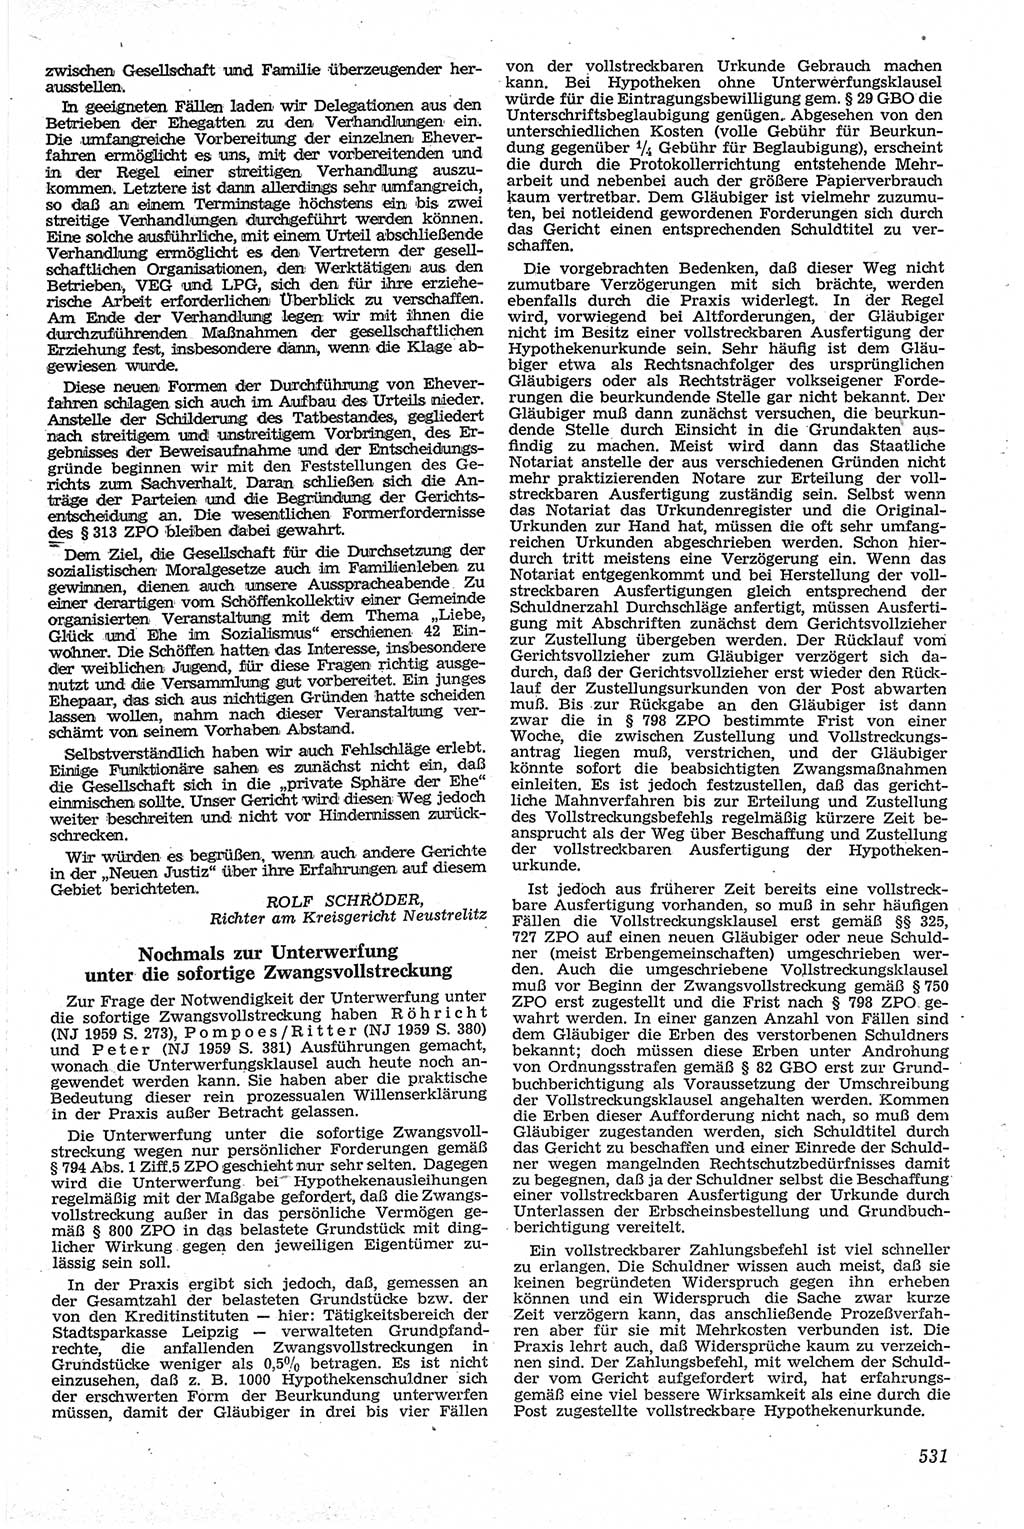 Neue Justiz (NJ), Zeitschrift für Recht und Rechtswissenschaft [Deutsche Demokratische Republik (DDR)], 13. Jahrgang 1959, Seite 531 (NJ DDR 1959, S. 531)